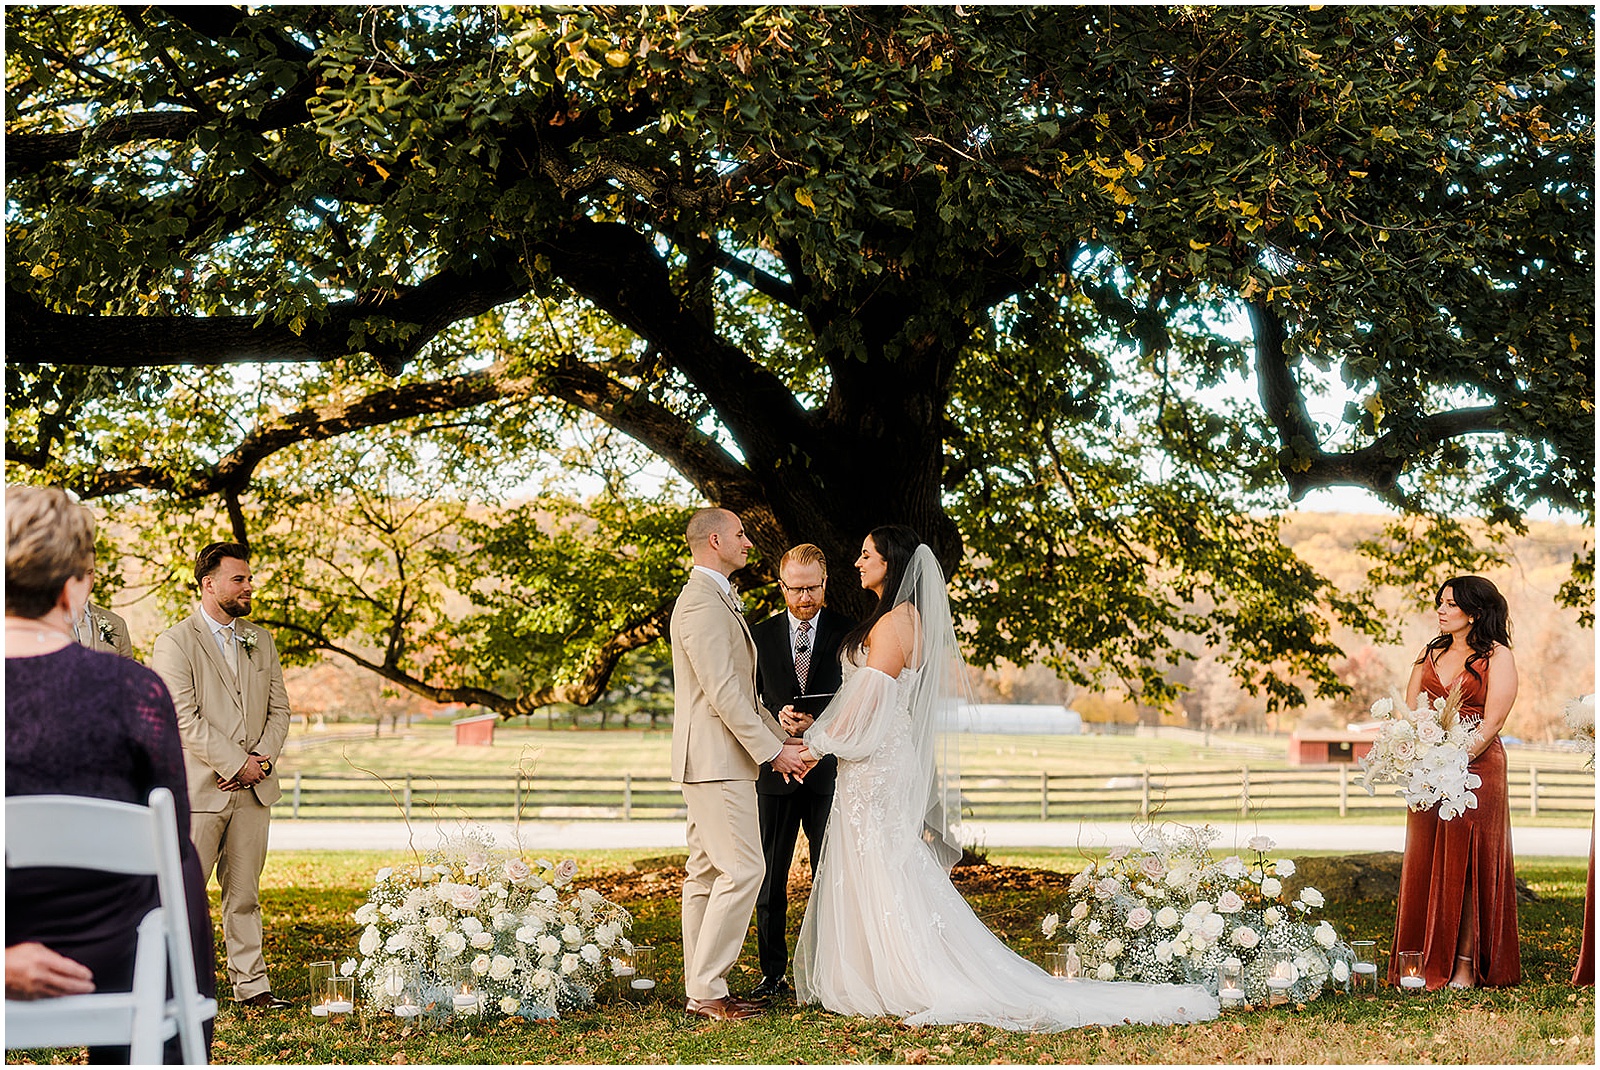 A bride and groom exchange vows under a tree at Springton Manor Farm.